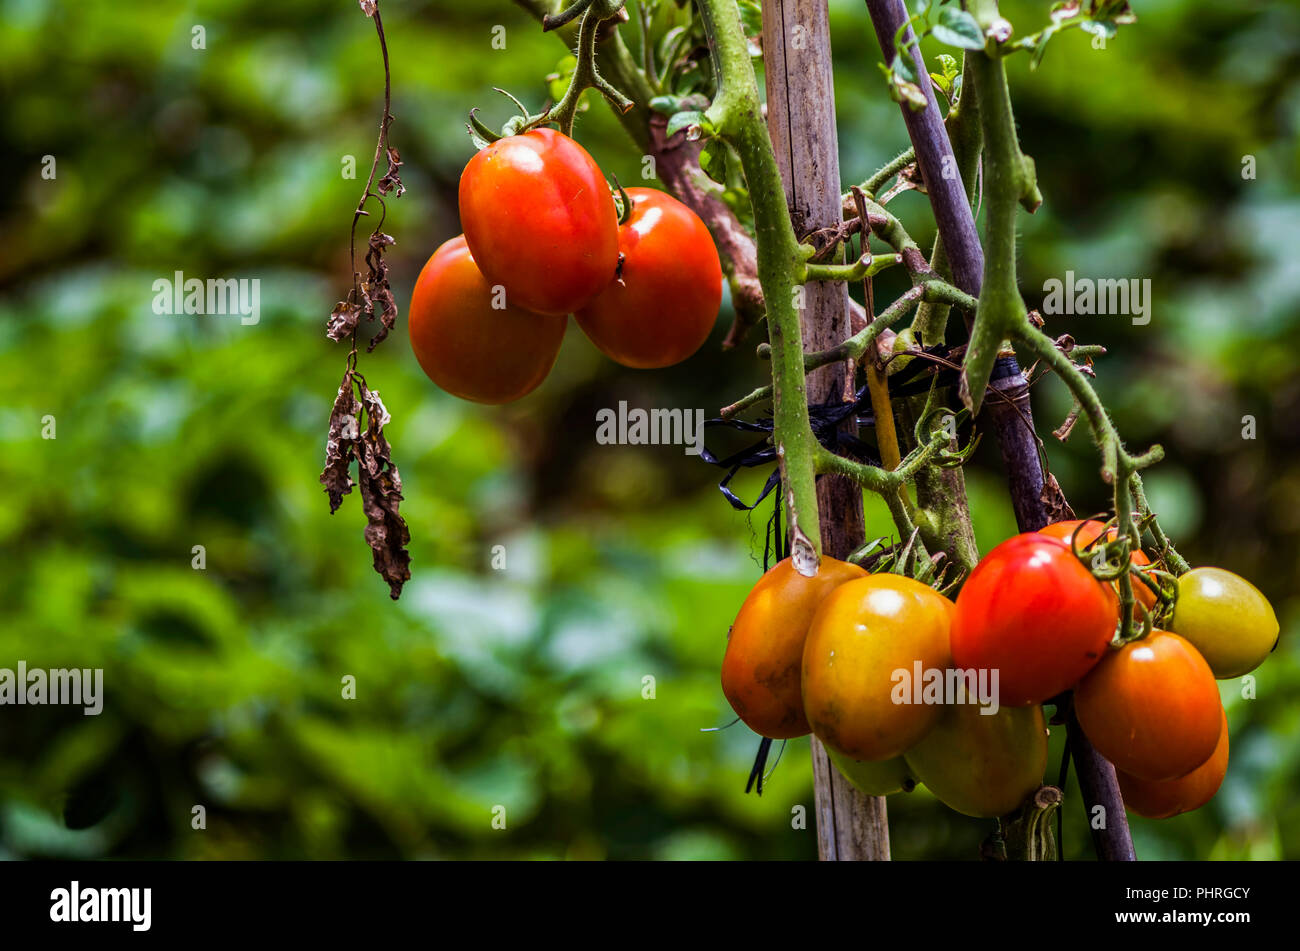 Les tomates mûrissent sur l'usine, la ferme de tomate. Une partie de la production agricole Banque D'Images